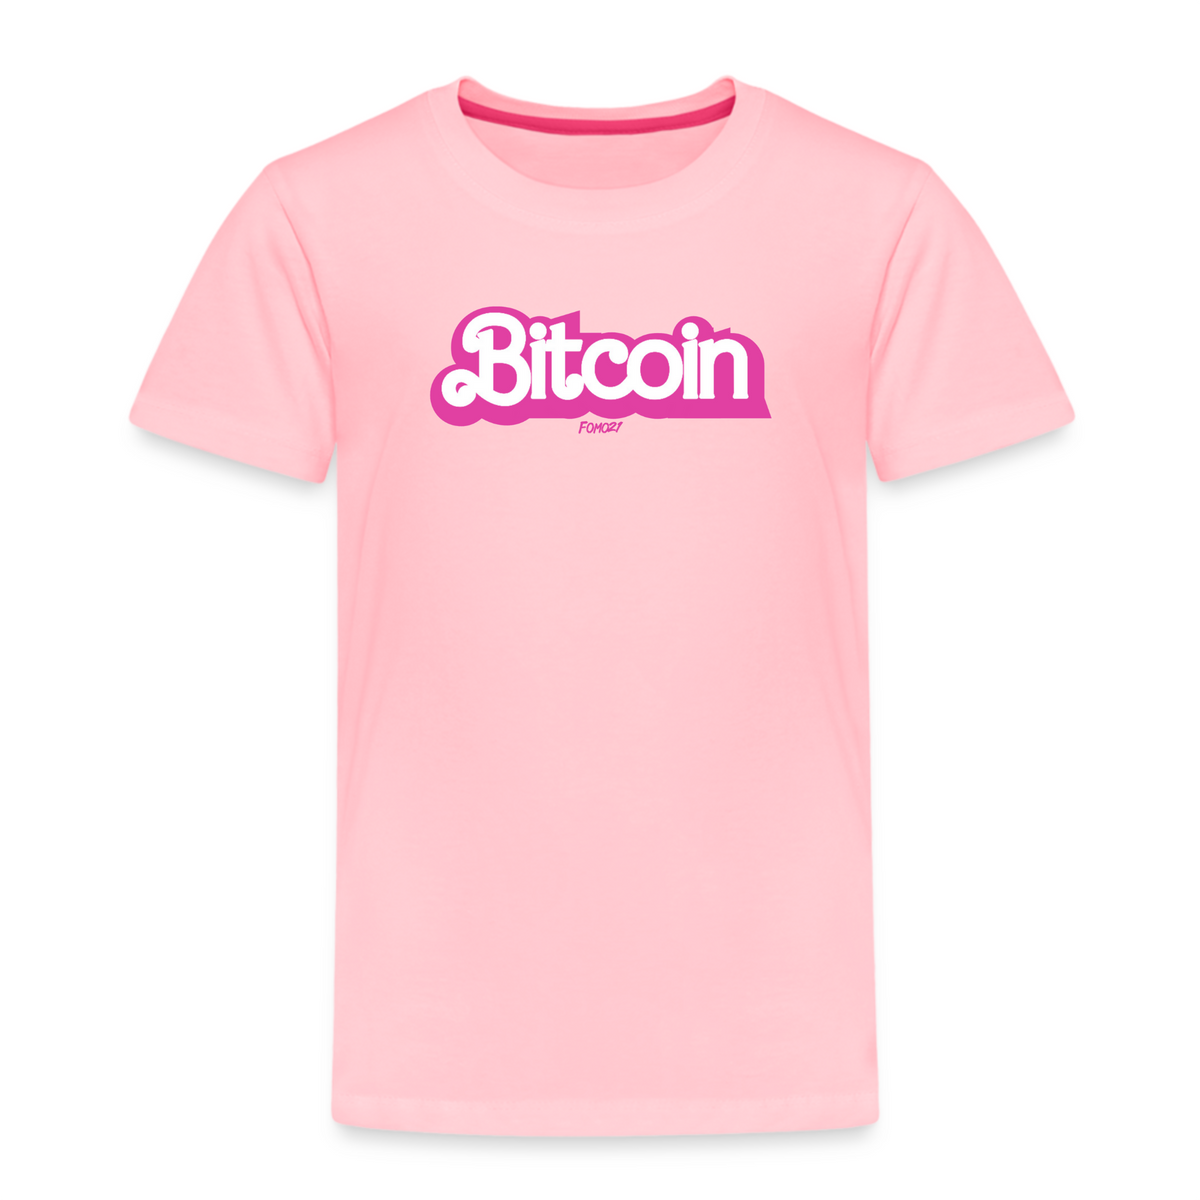 In The Bitcoin World Toddler T-Shirt - fomo21